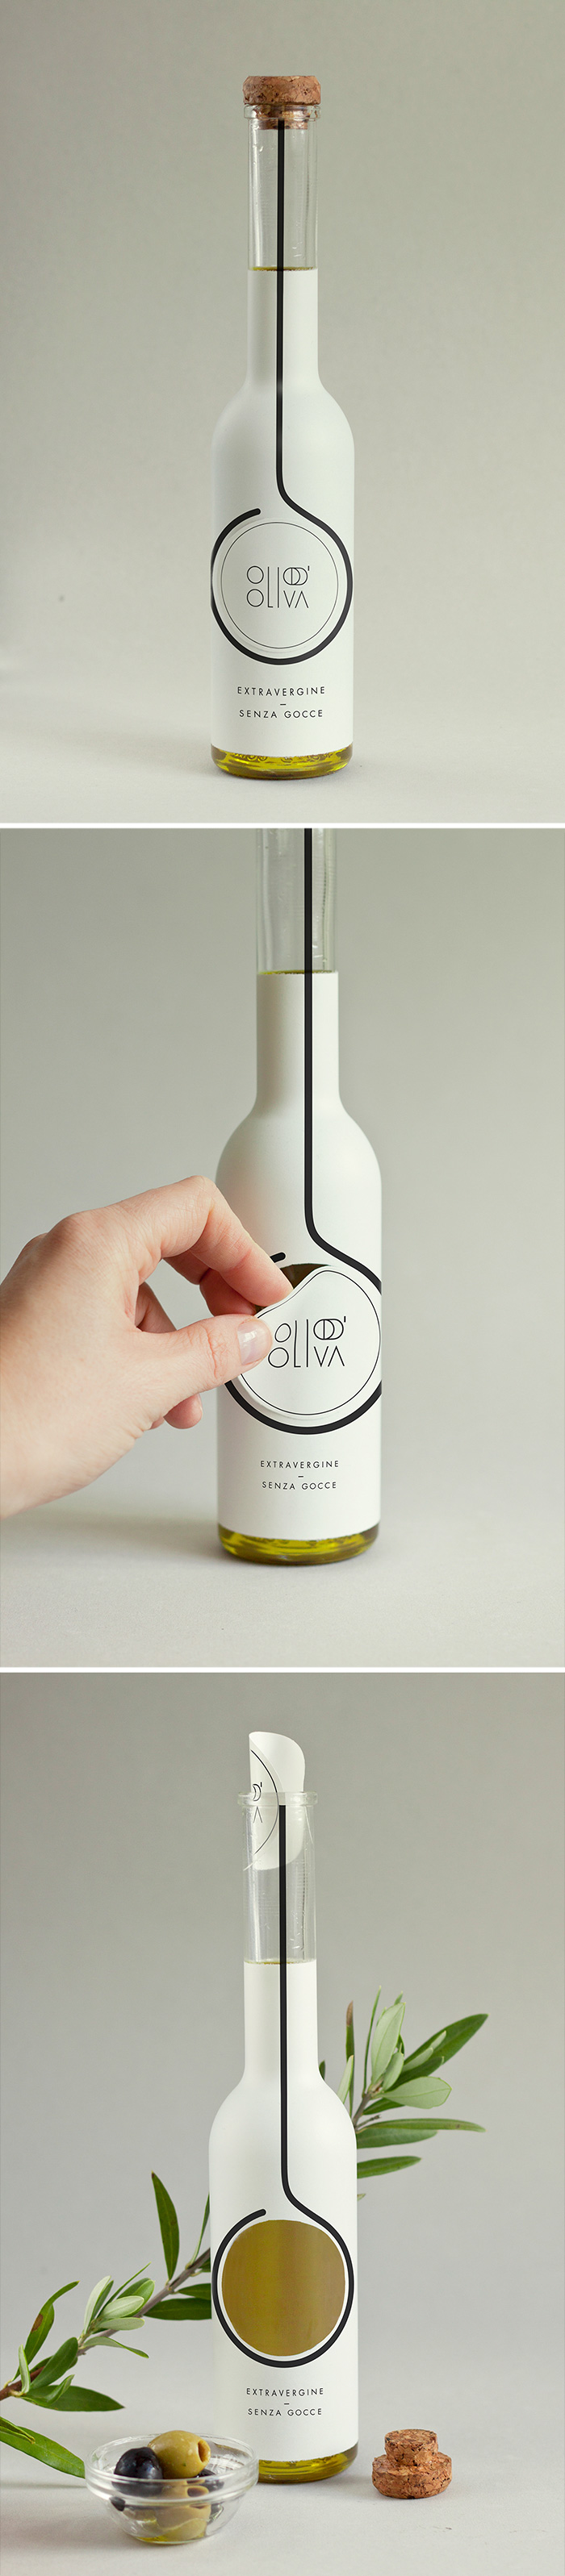 133. Оригинальная бутылка для оливкового масла